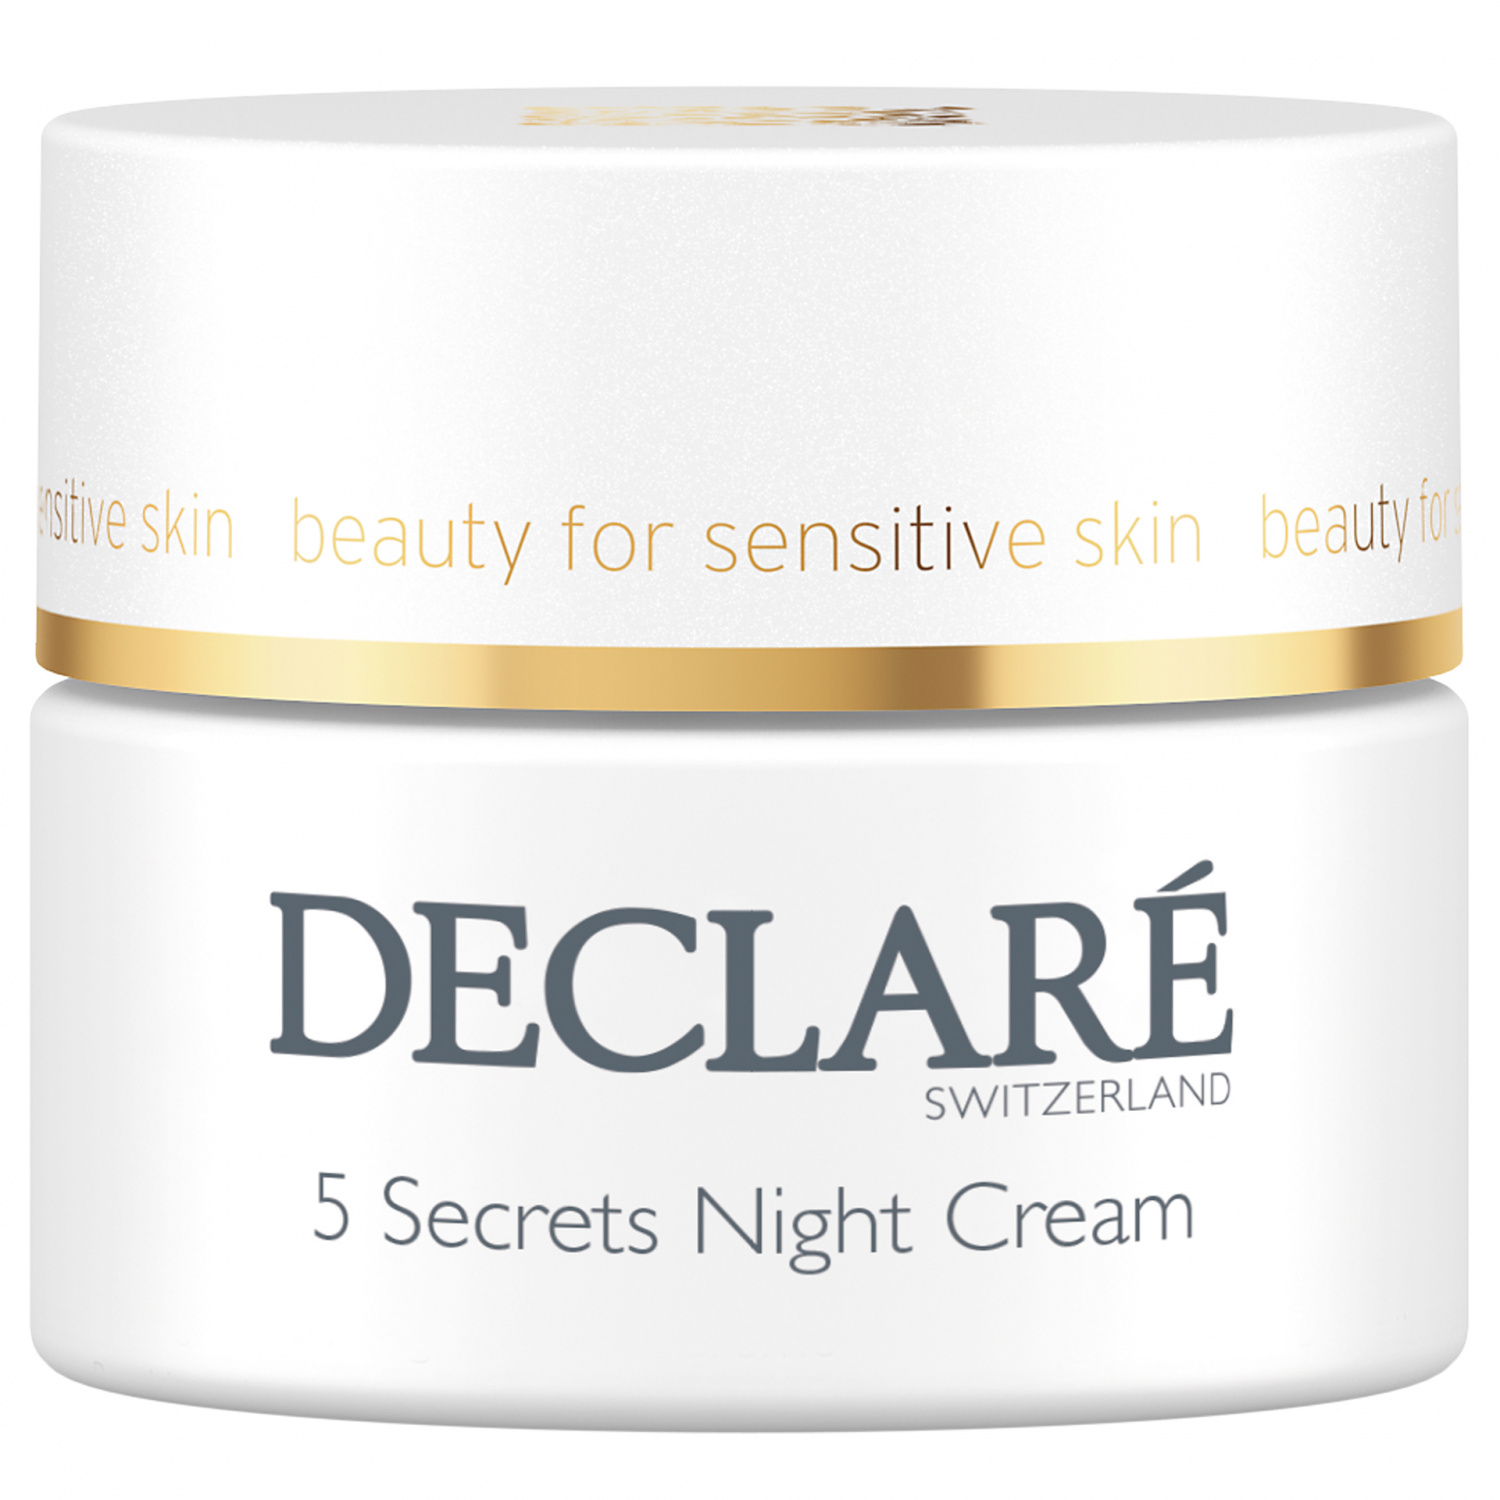 Declare 5 Secrets Night Cream 50ml - интернет-магазин профессиональной косметики Spadream, изображение 31146